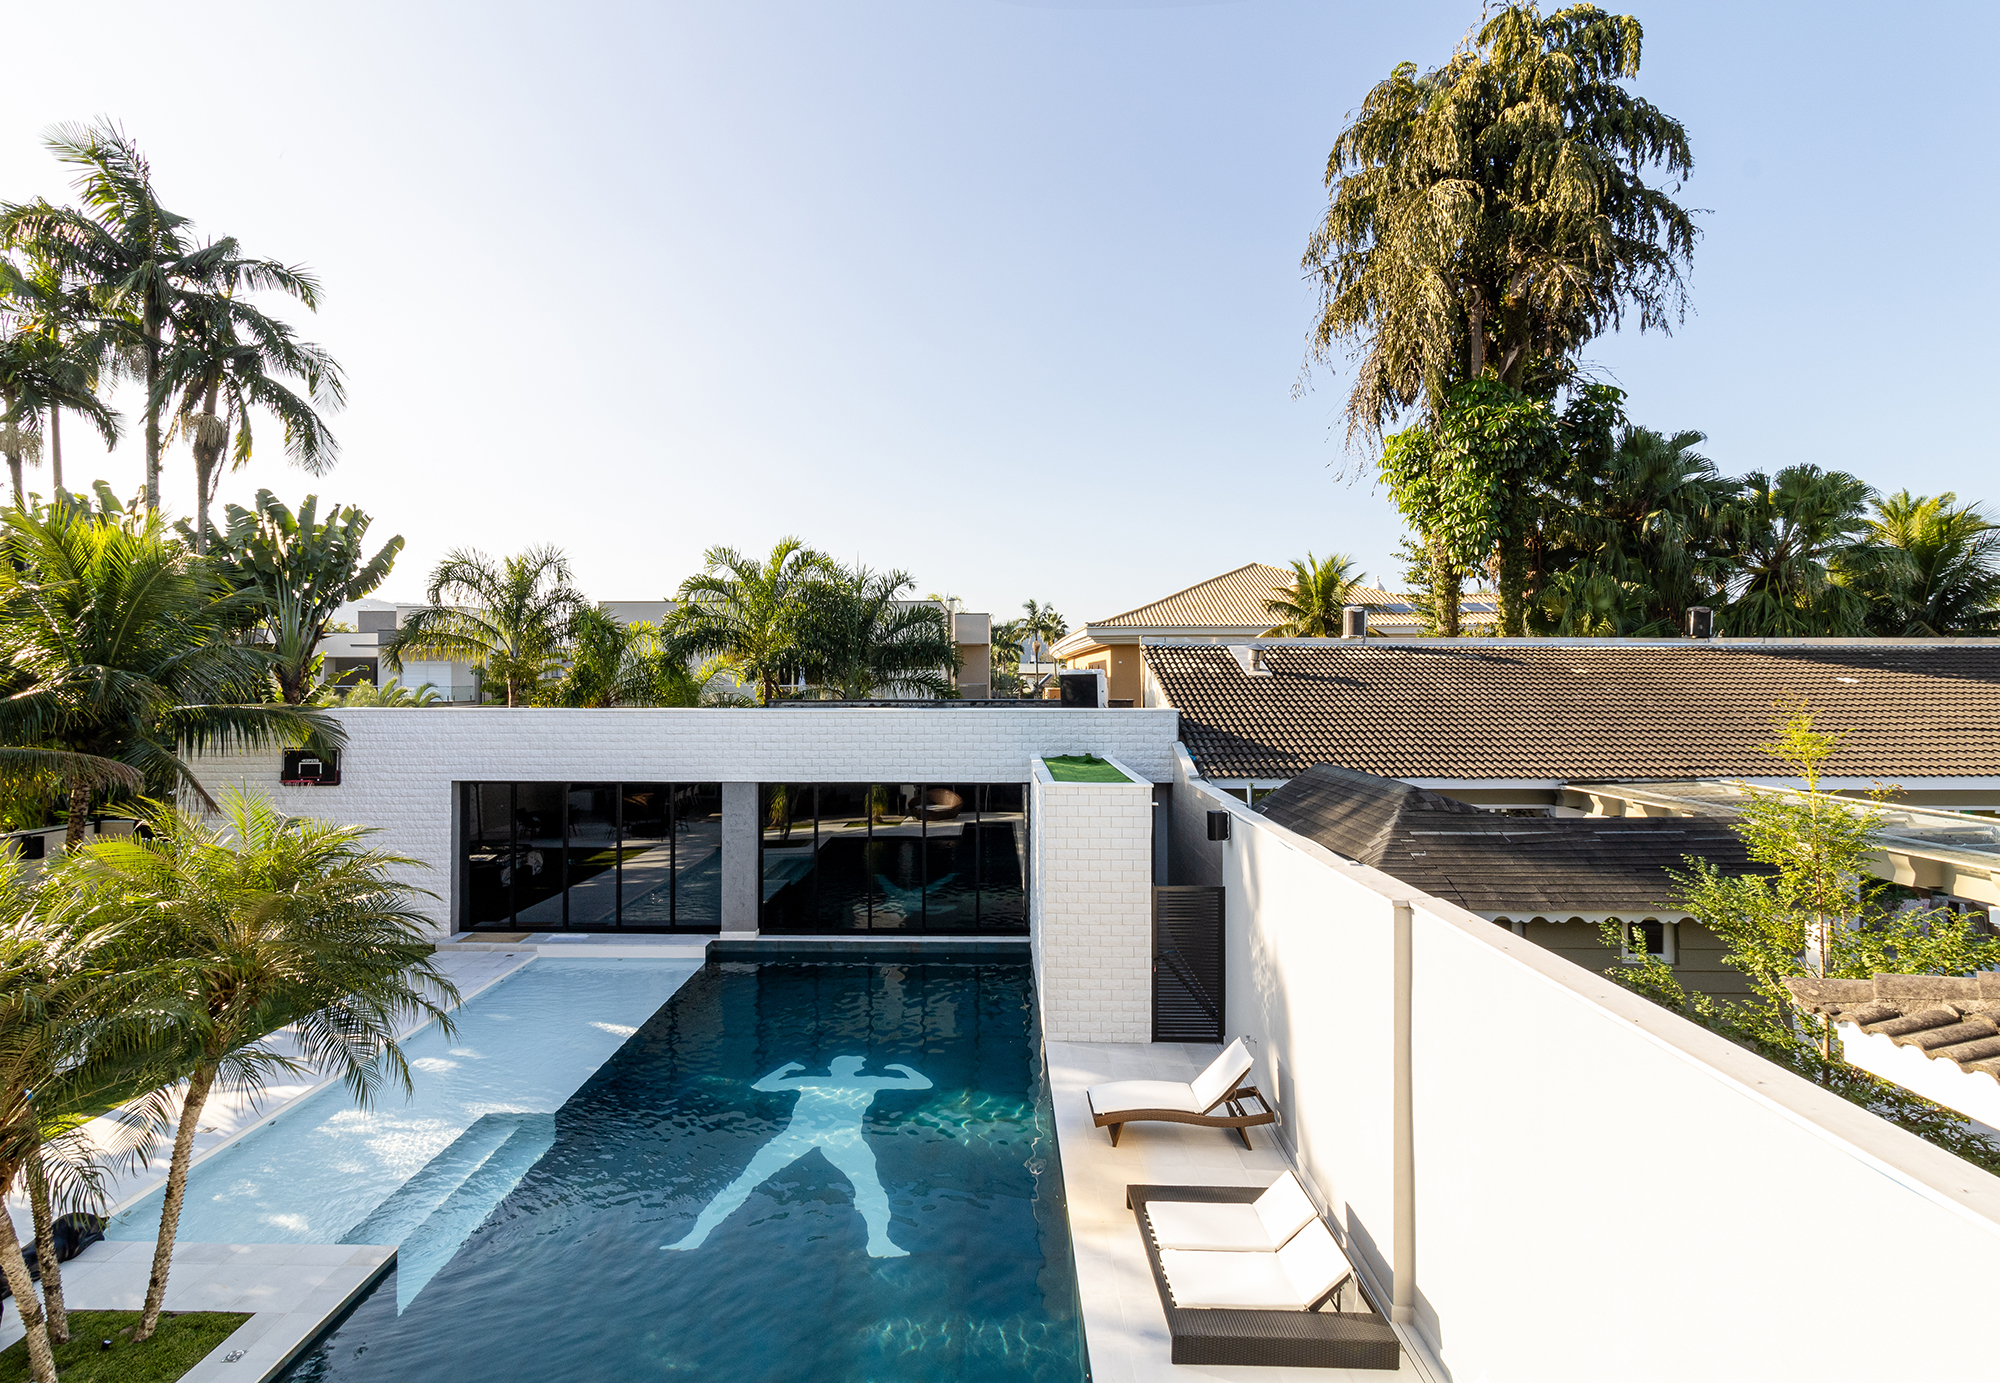 Conheça a mansão no Guarujá do jogador Gabigol. Projeto de Carlos Pardal Arquitetura. Na foto, fachada com piscina e jardim.